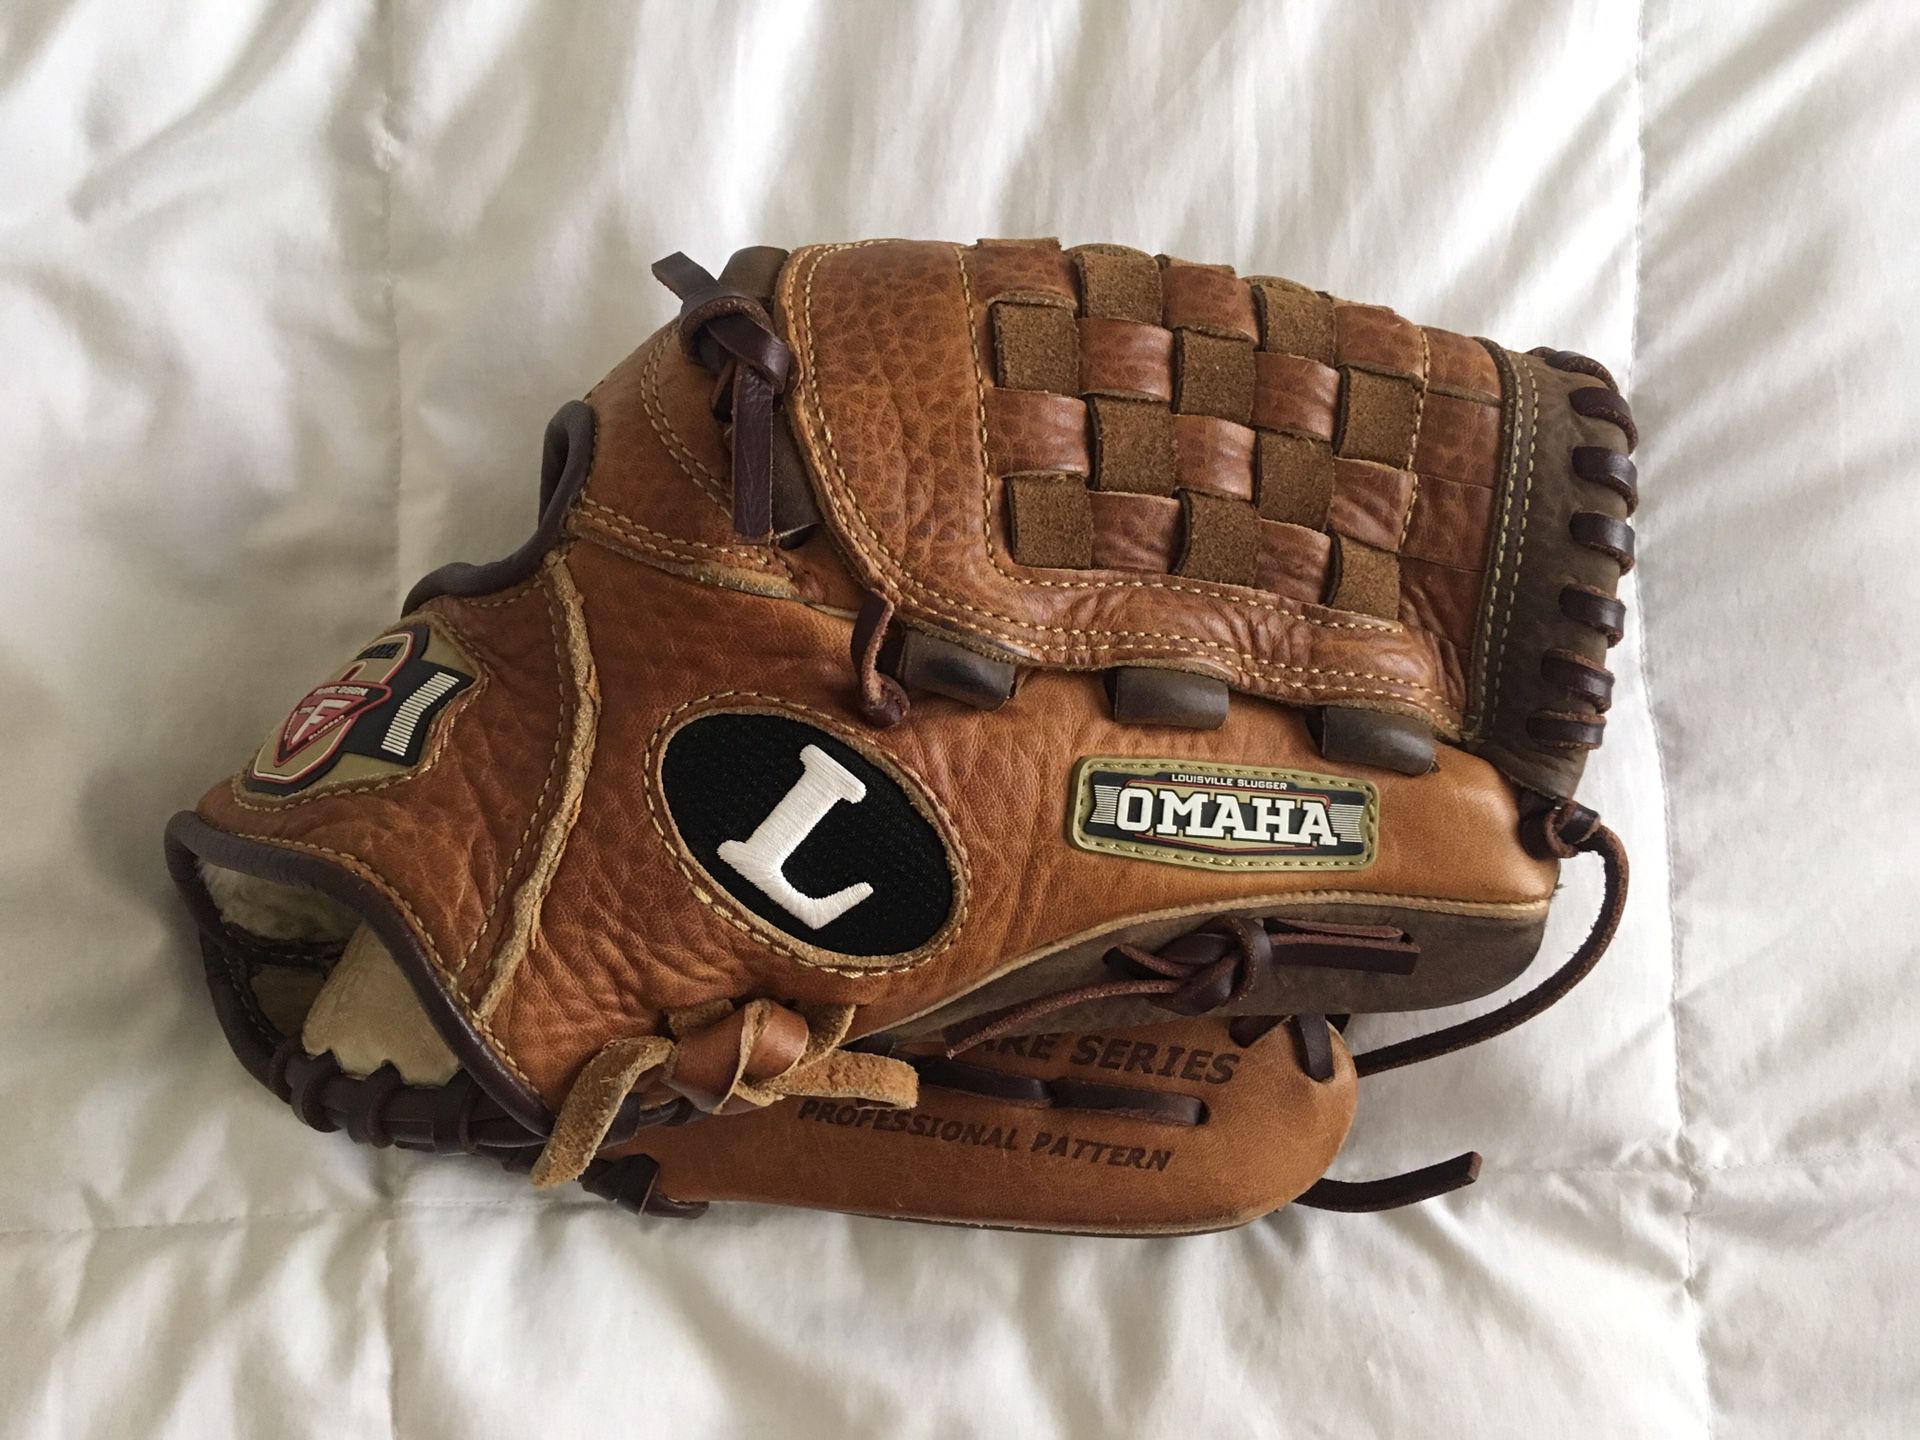 Baseball Glove 12” TPX Omaha Flare